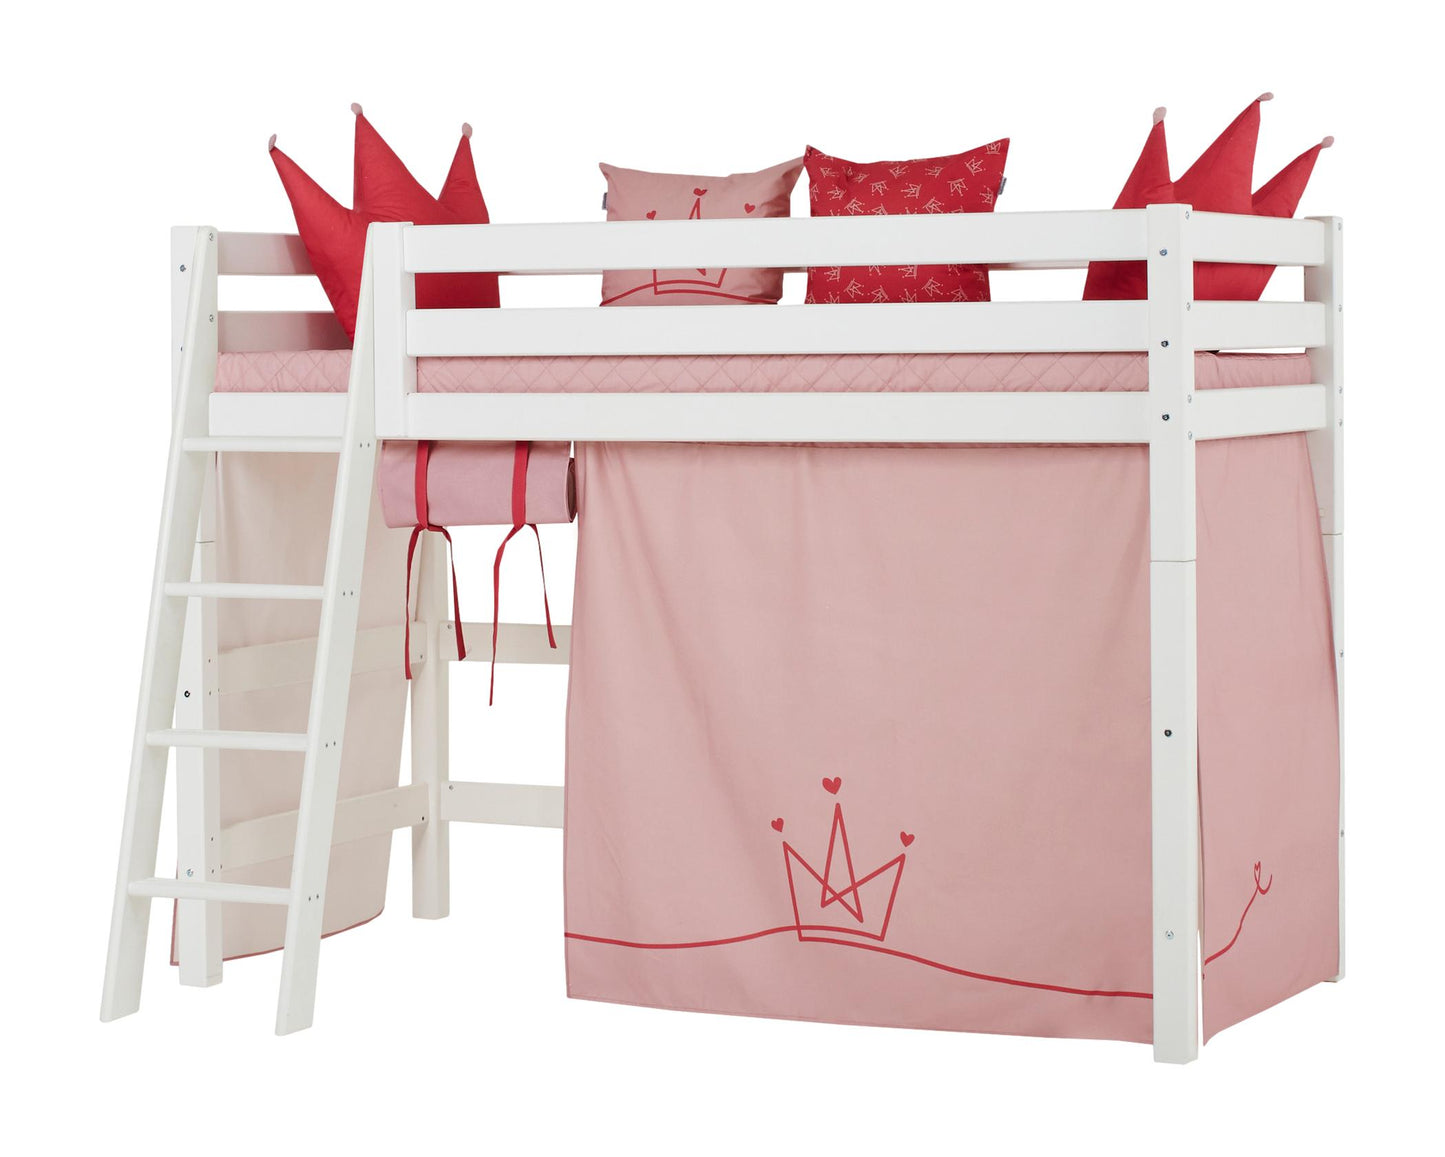 Принцесса - Занавес для средней кровати - 90x200 см